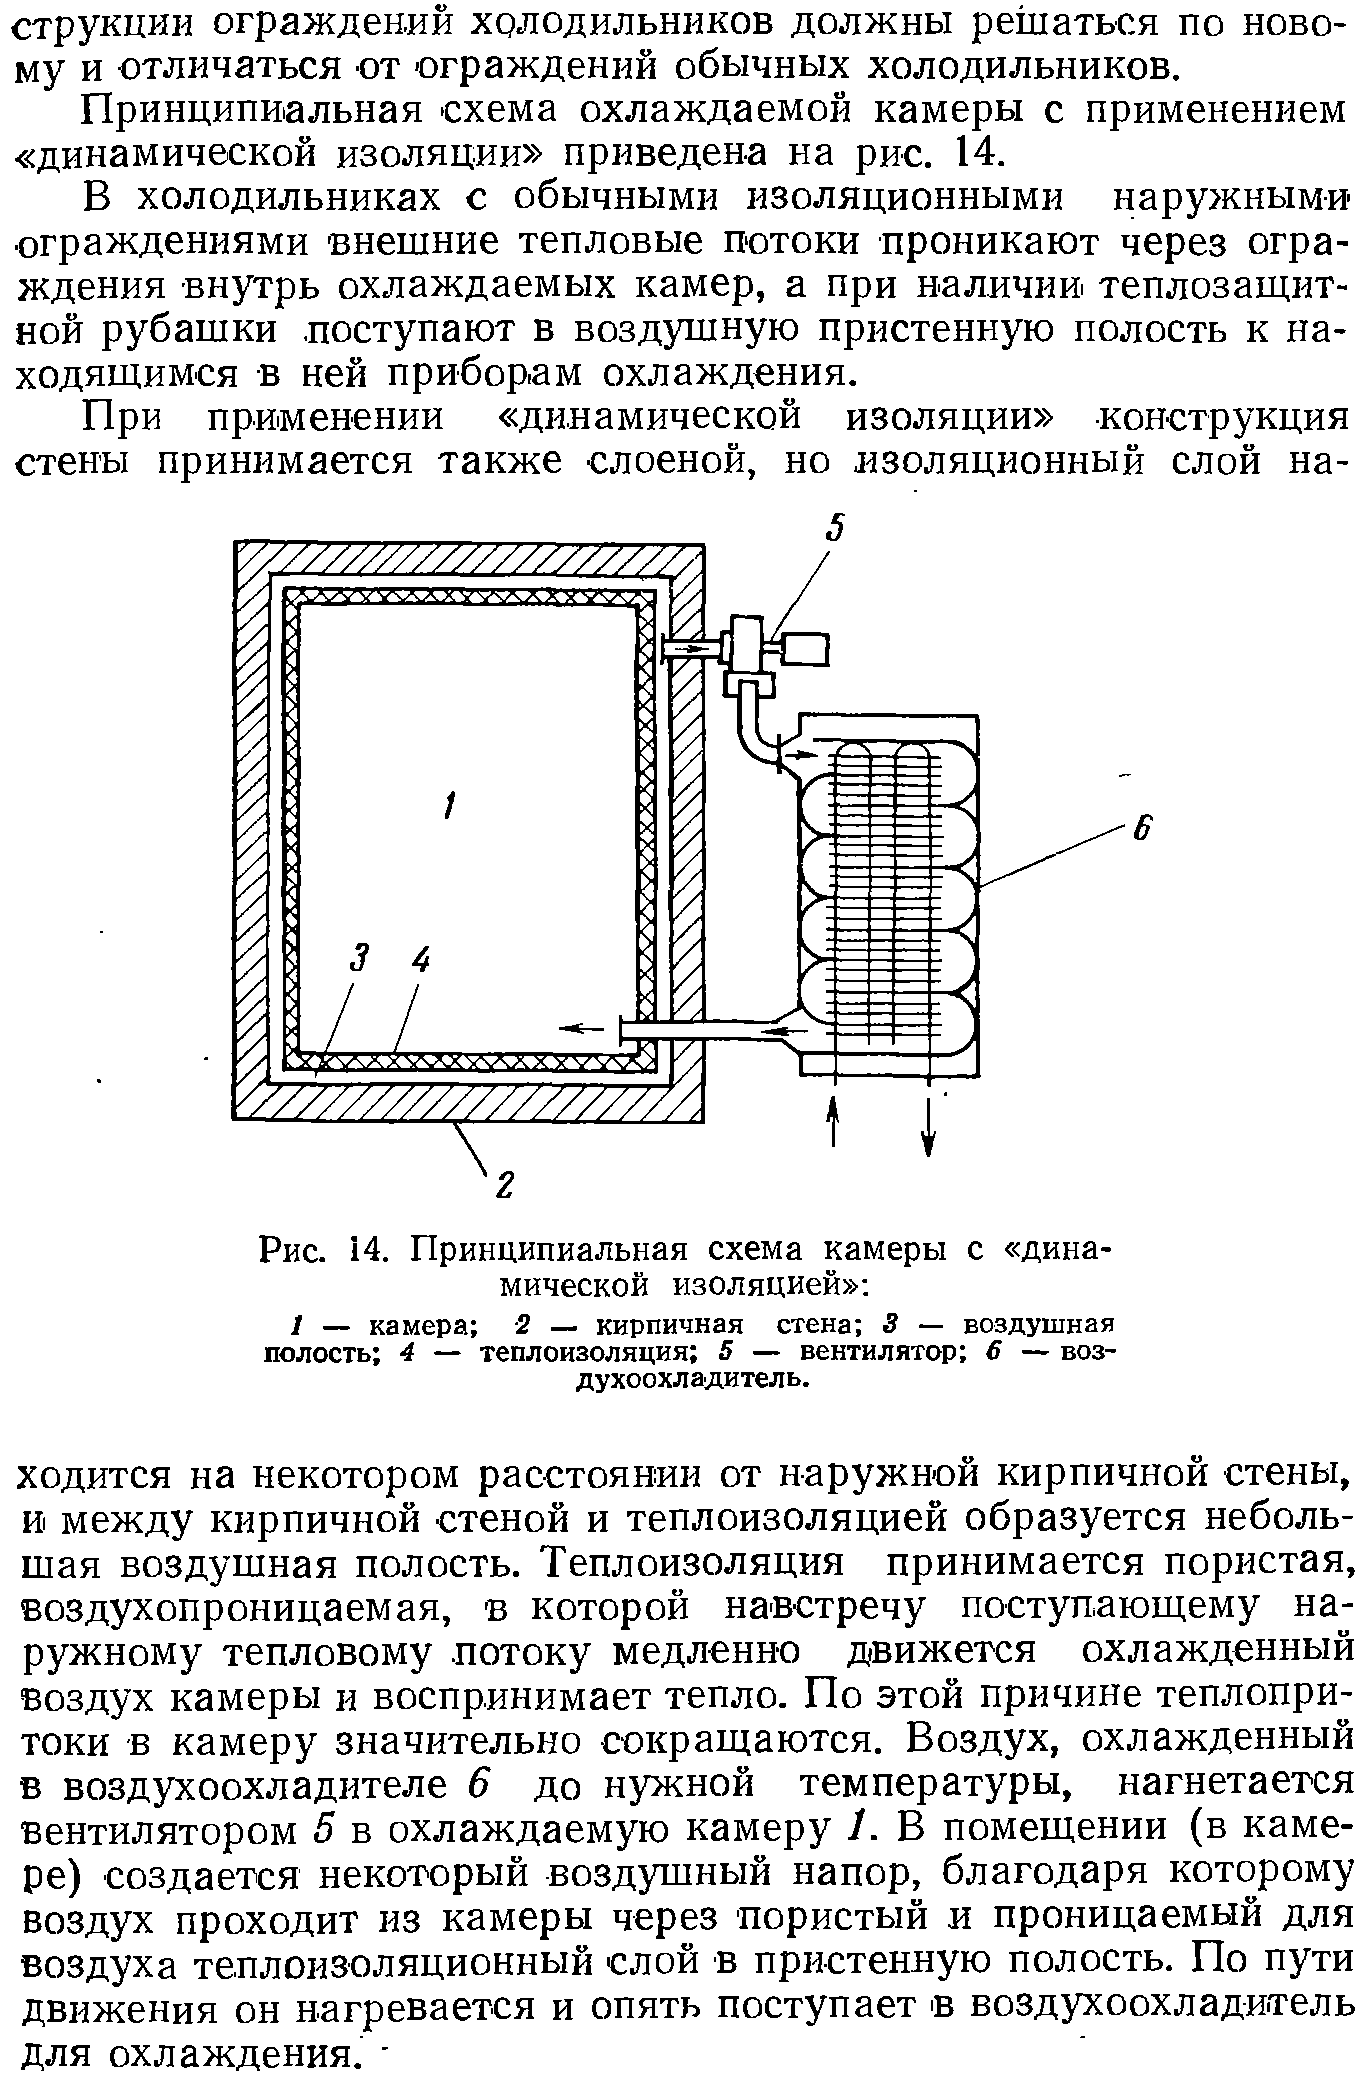 Принципиальная схема охлаждаемой камеры с применением динамической изоляции приведена на рис. 14.